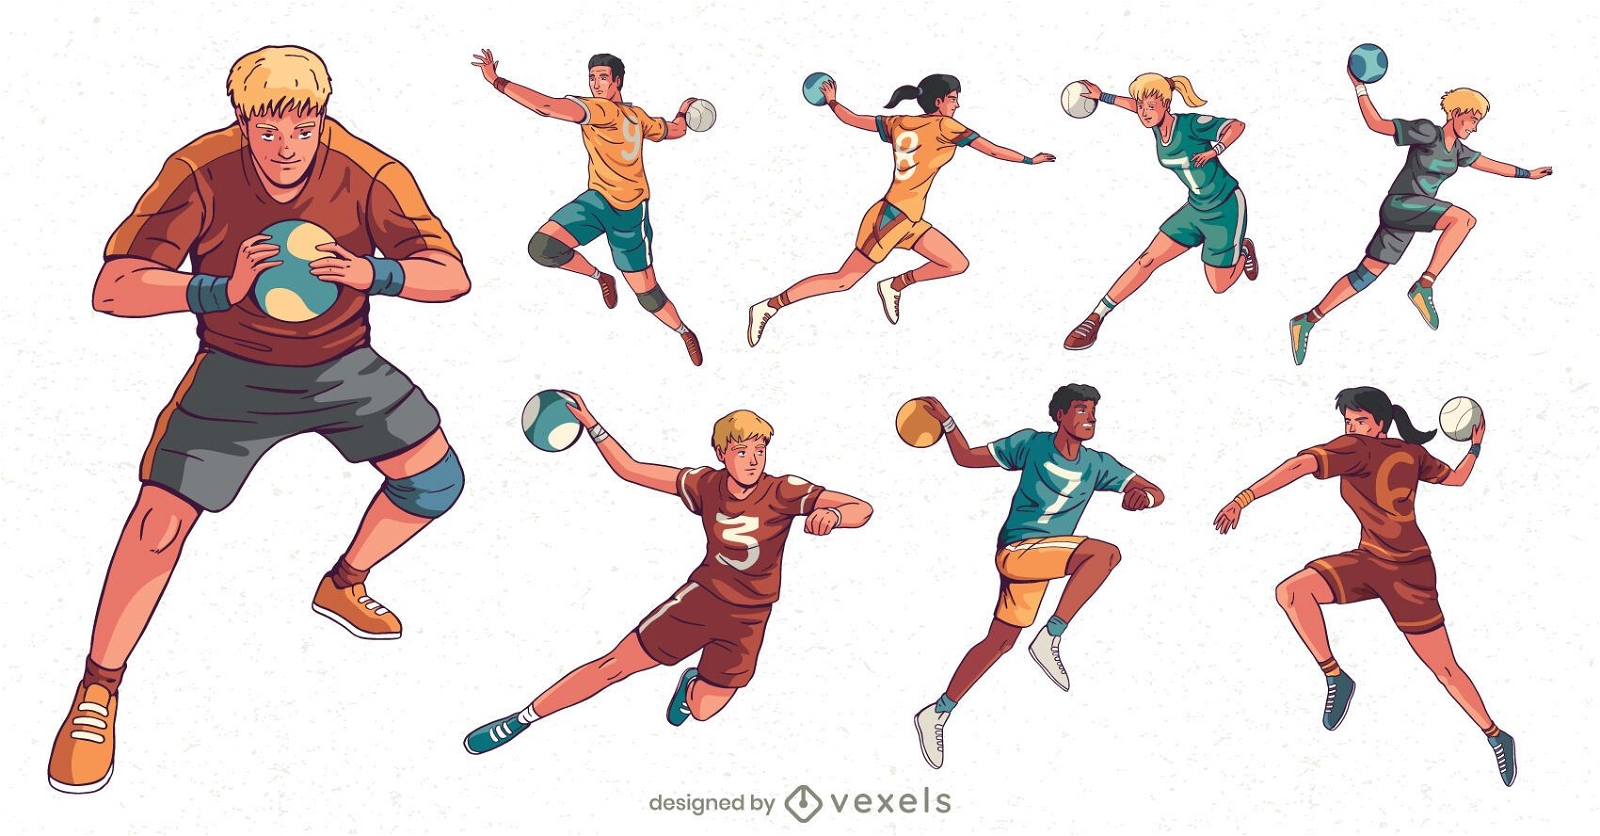 Zeichensatz der Handballspieler